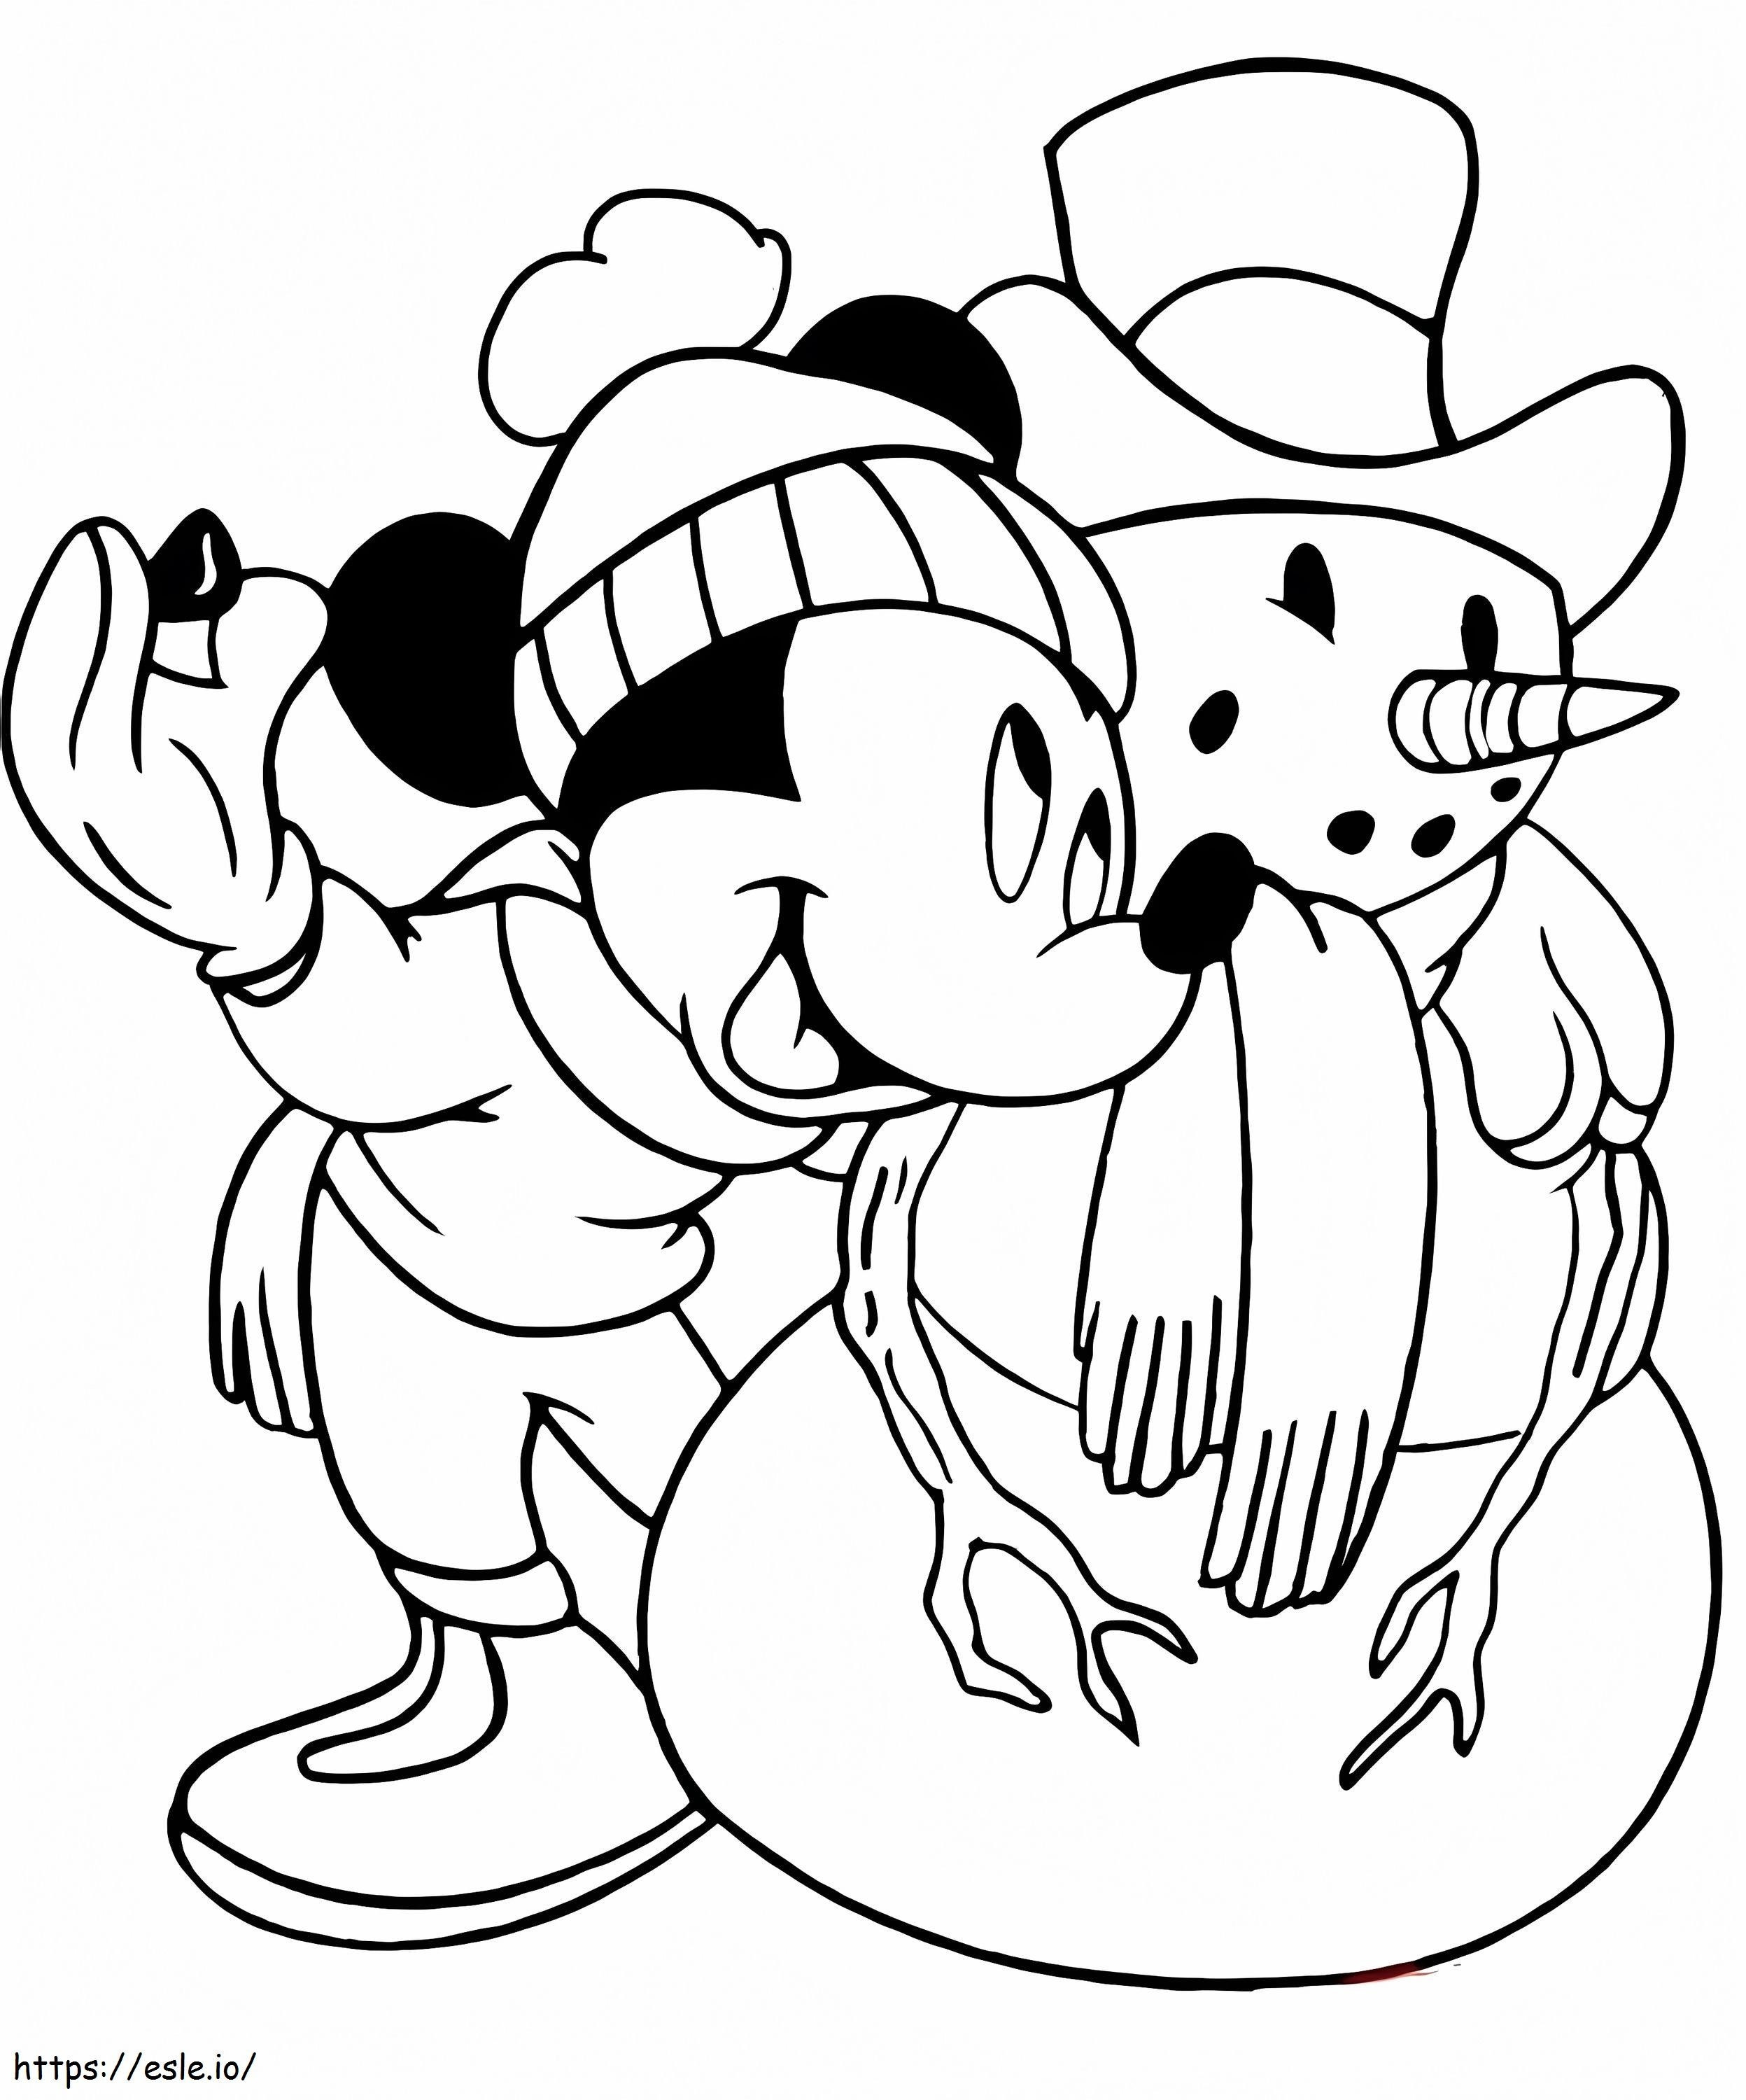 Coloriage Mickey et bonhomme de neige à imprimer dessin